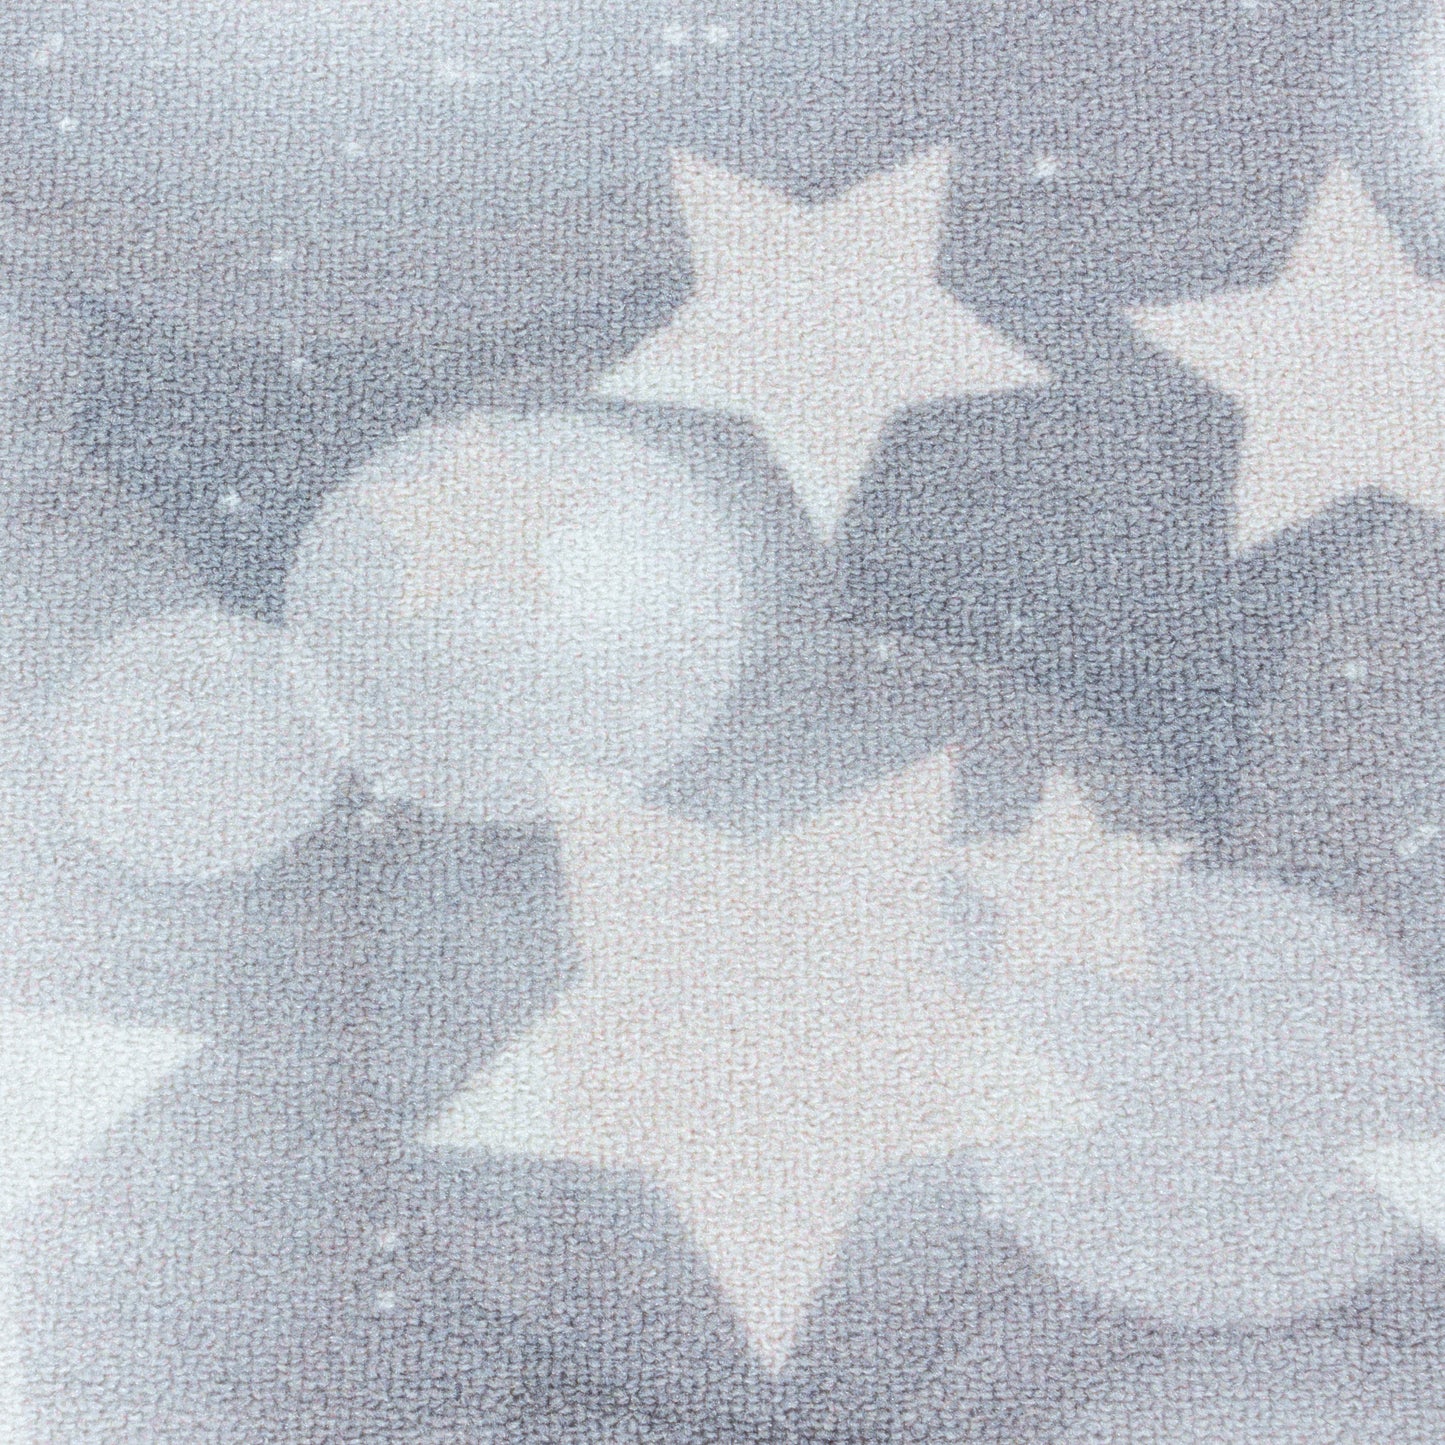 Kurzflor Teppich Kinderteppich Kinderzimmer Spielteppich Sterne Punkte Grau